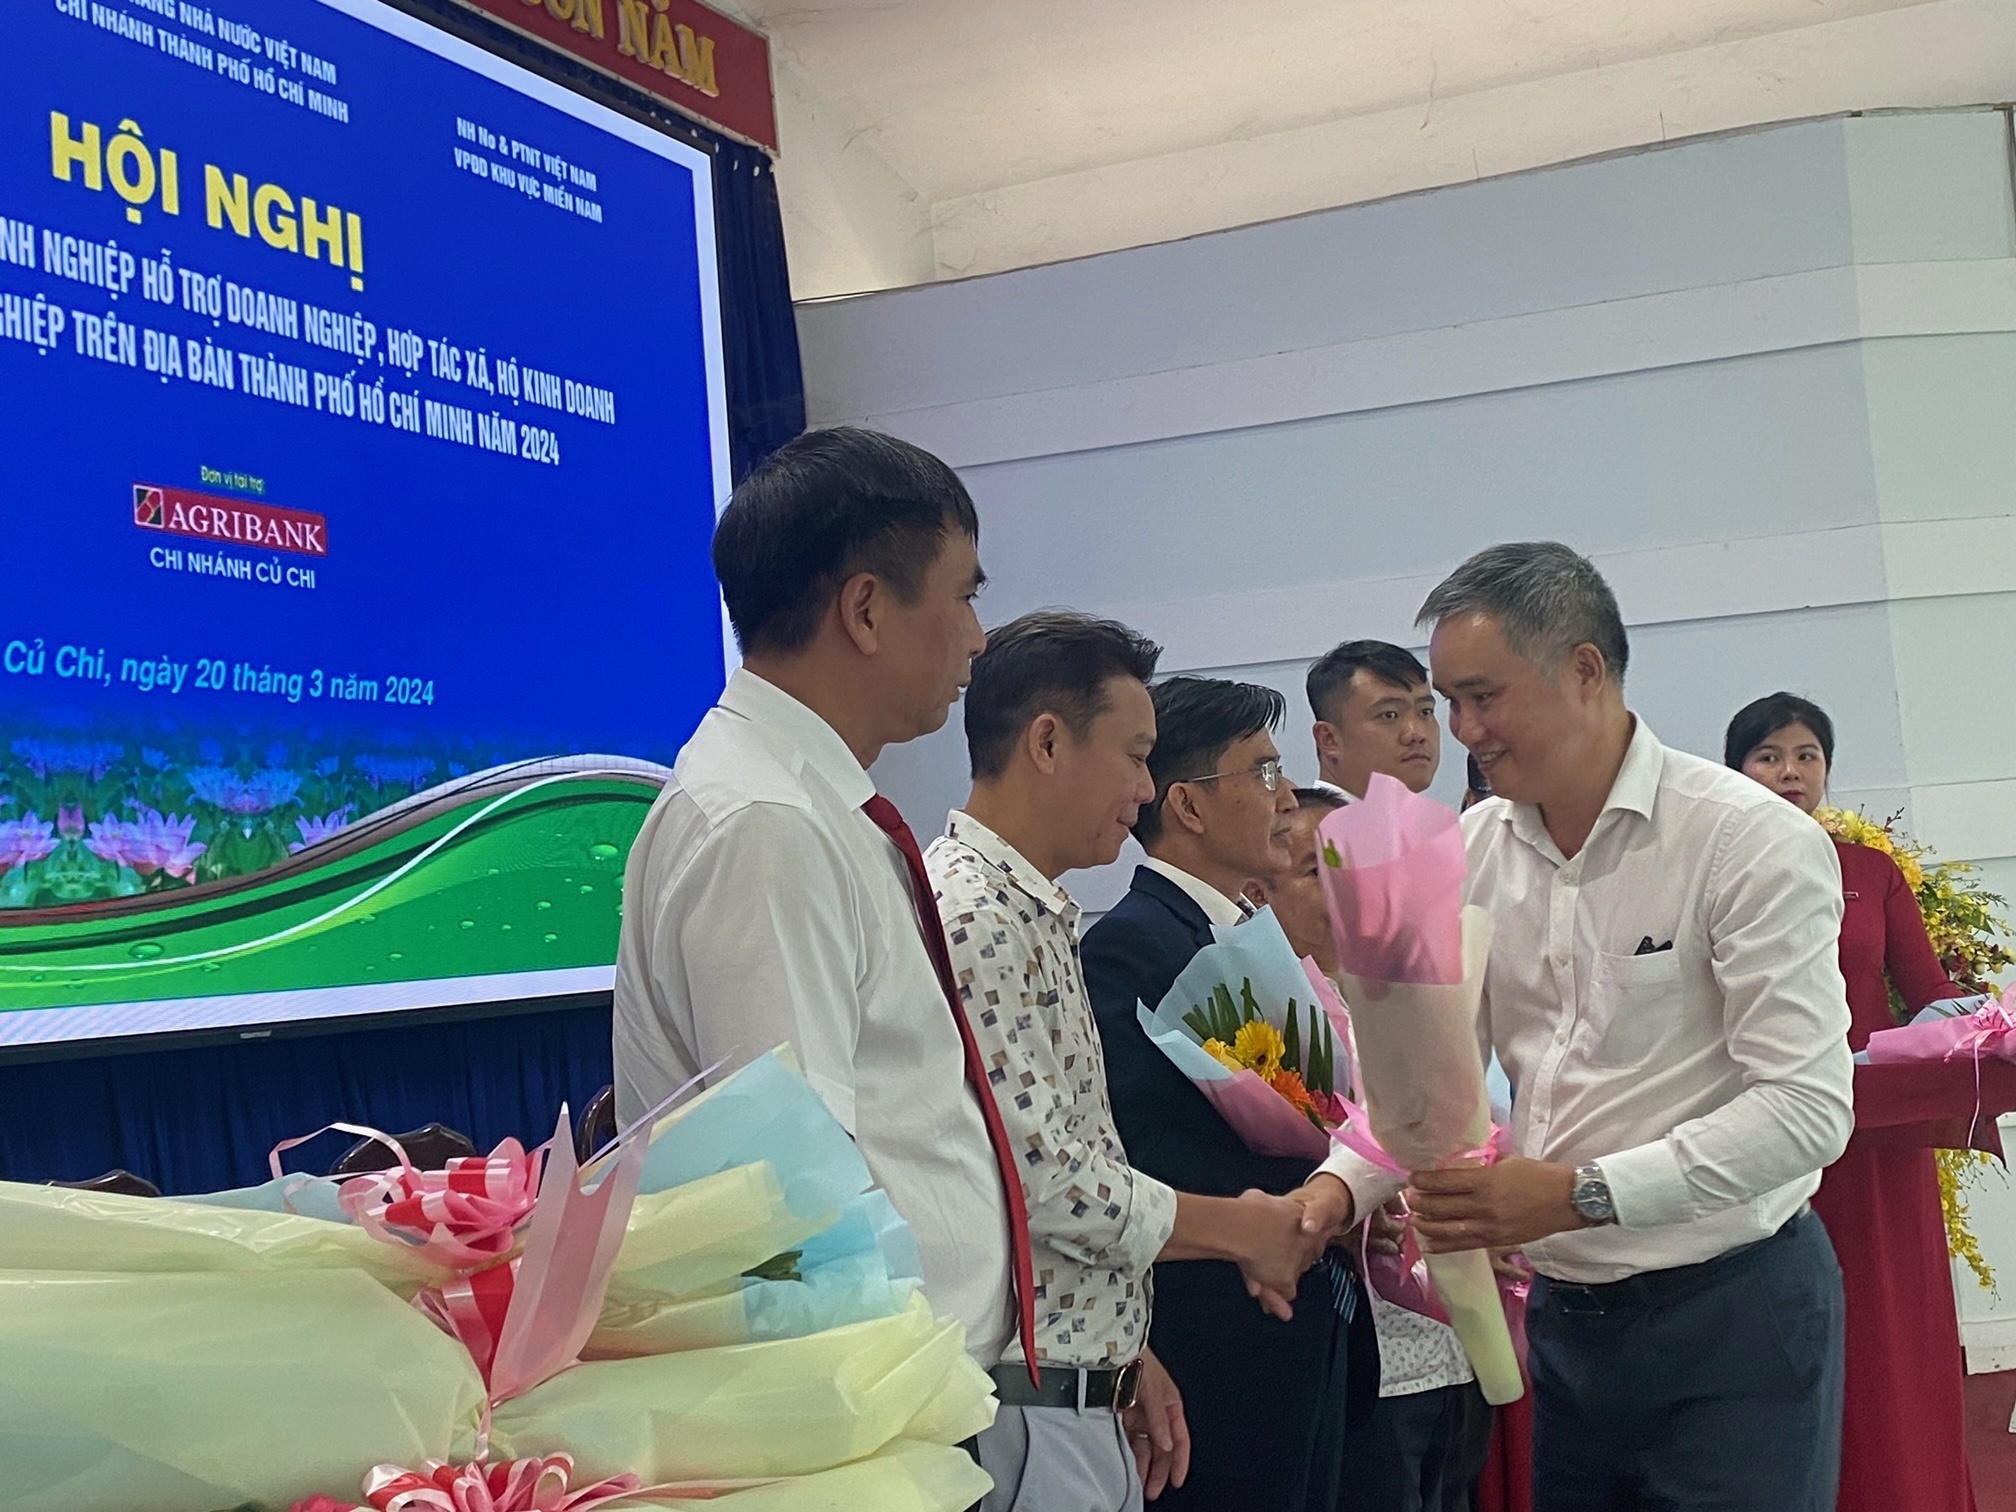 TP. Hồ Chí Minh: 10 chi nhánh Agribank cam kết cho vay nông nghiệp công nghệ cao